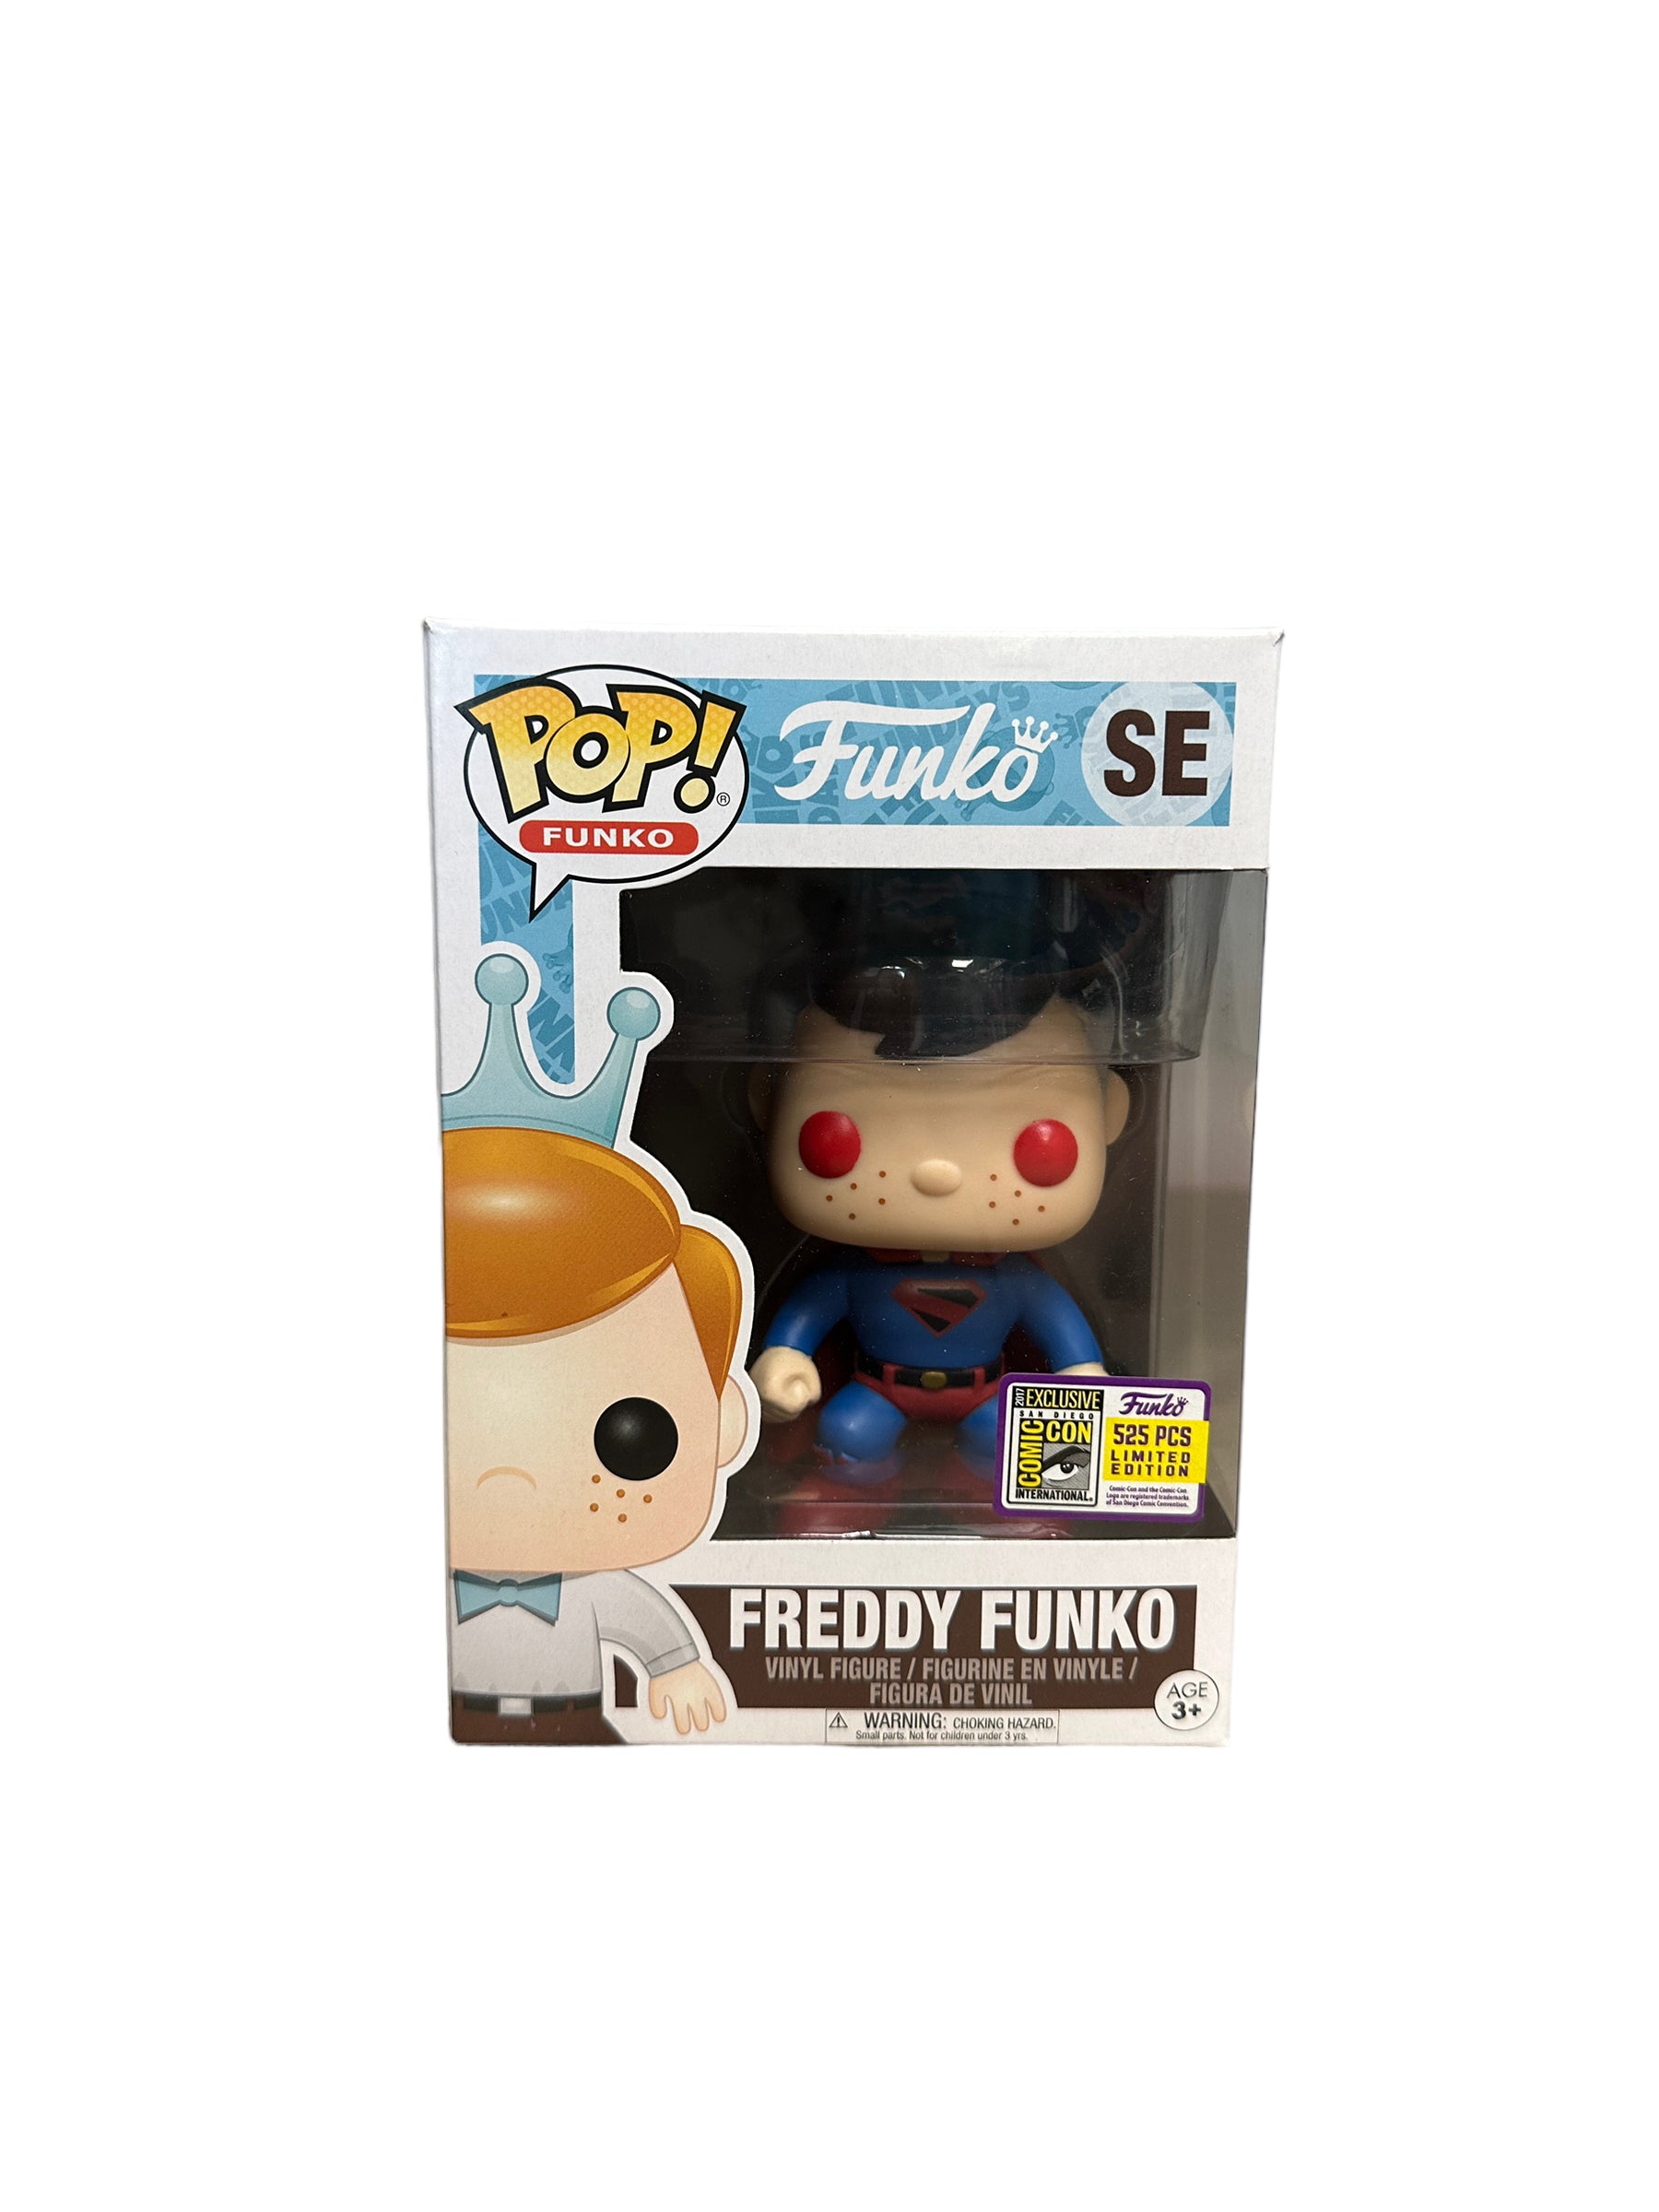 Freddy Funko as Superman [Kingdom Come] Funko Pop! - SDCC 2017 Exclusive LE525 Pcs - Condition 8.75/10